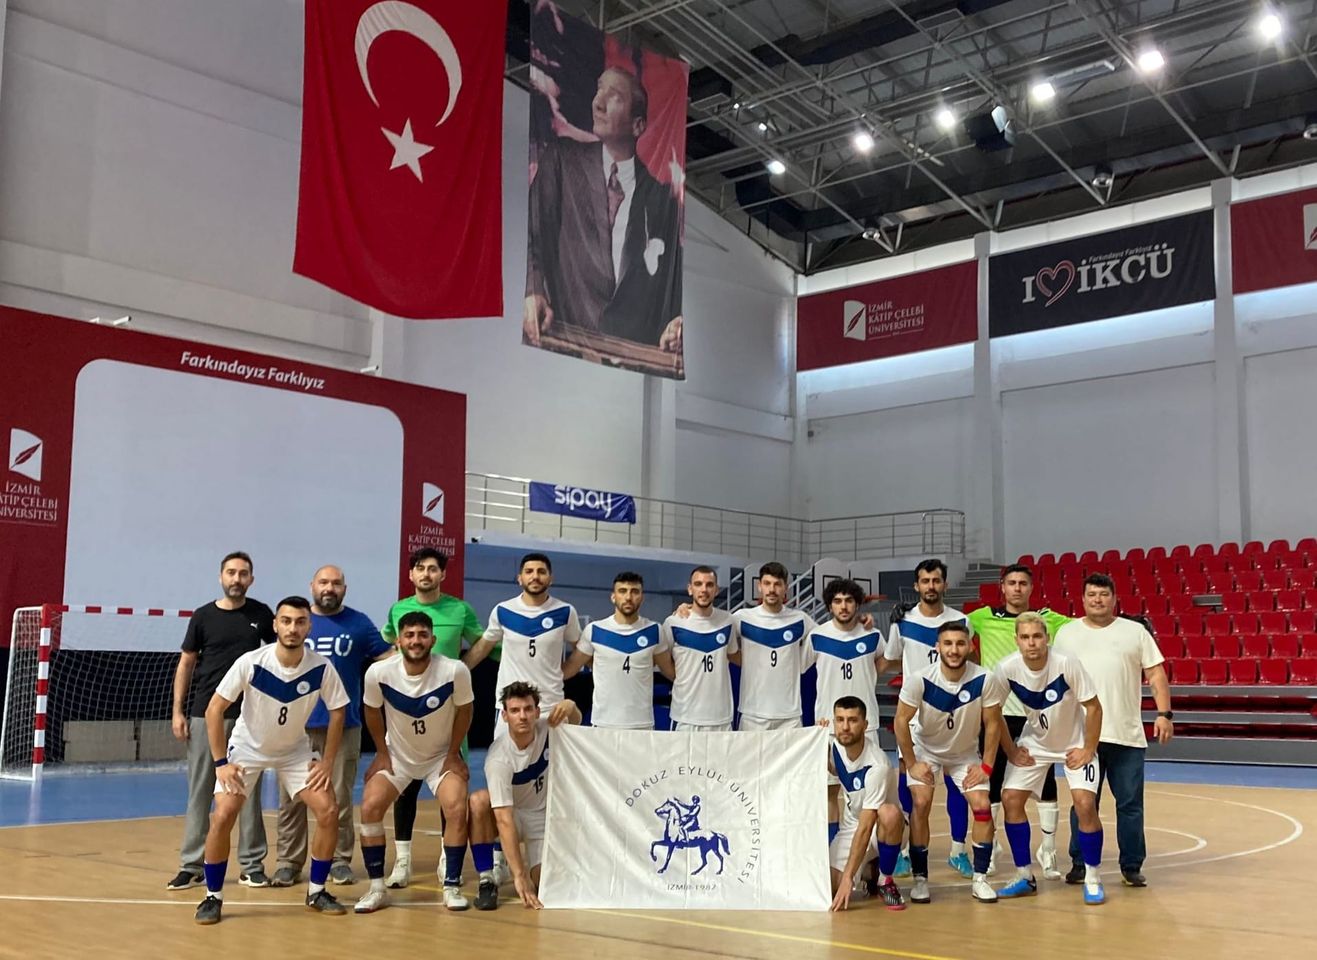 İzmir'deki üniversite takımı, Salon Futbolu Bölgesel Ligi'nde başarılı performans sergileyerek Süper Lig'e yükselmek için Play-Off'ta mücadele edecek.